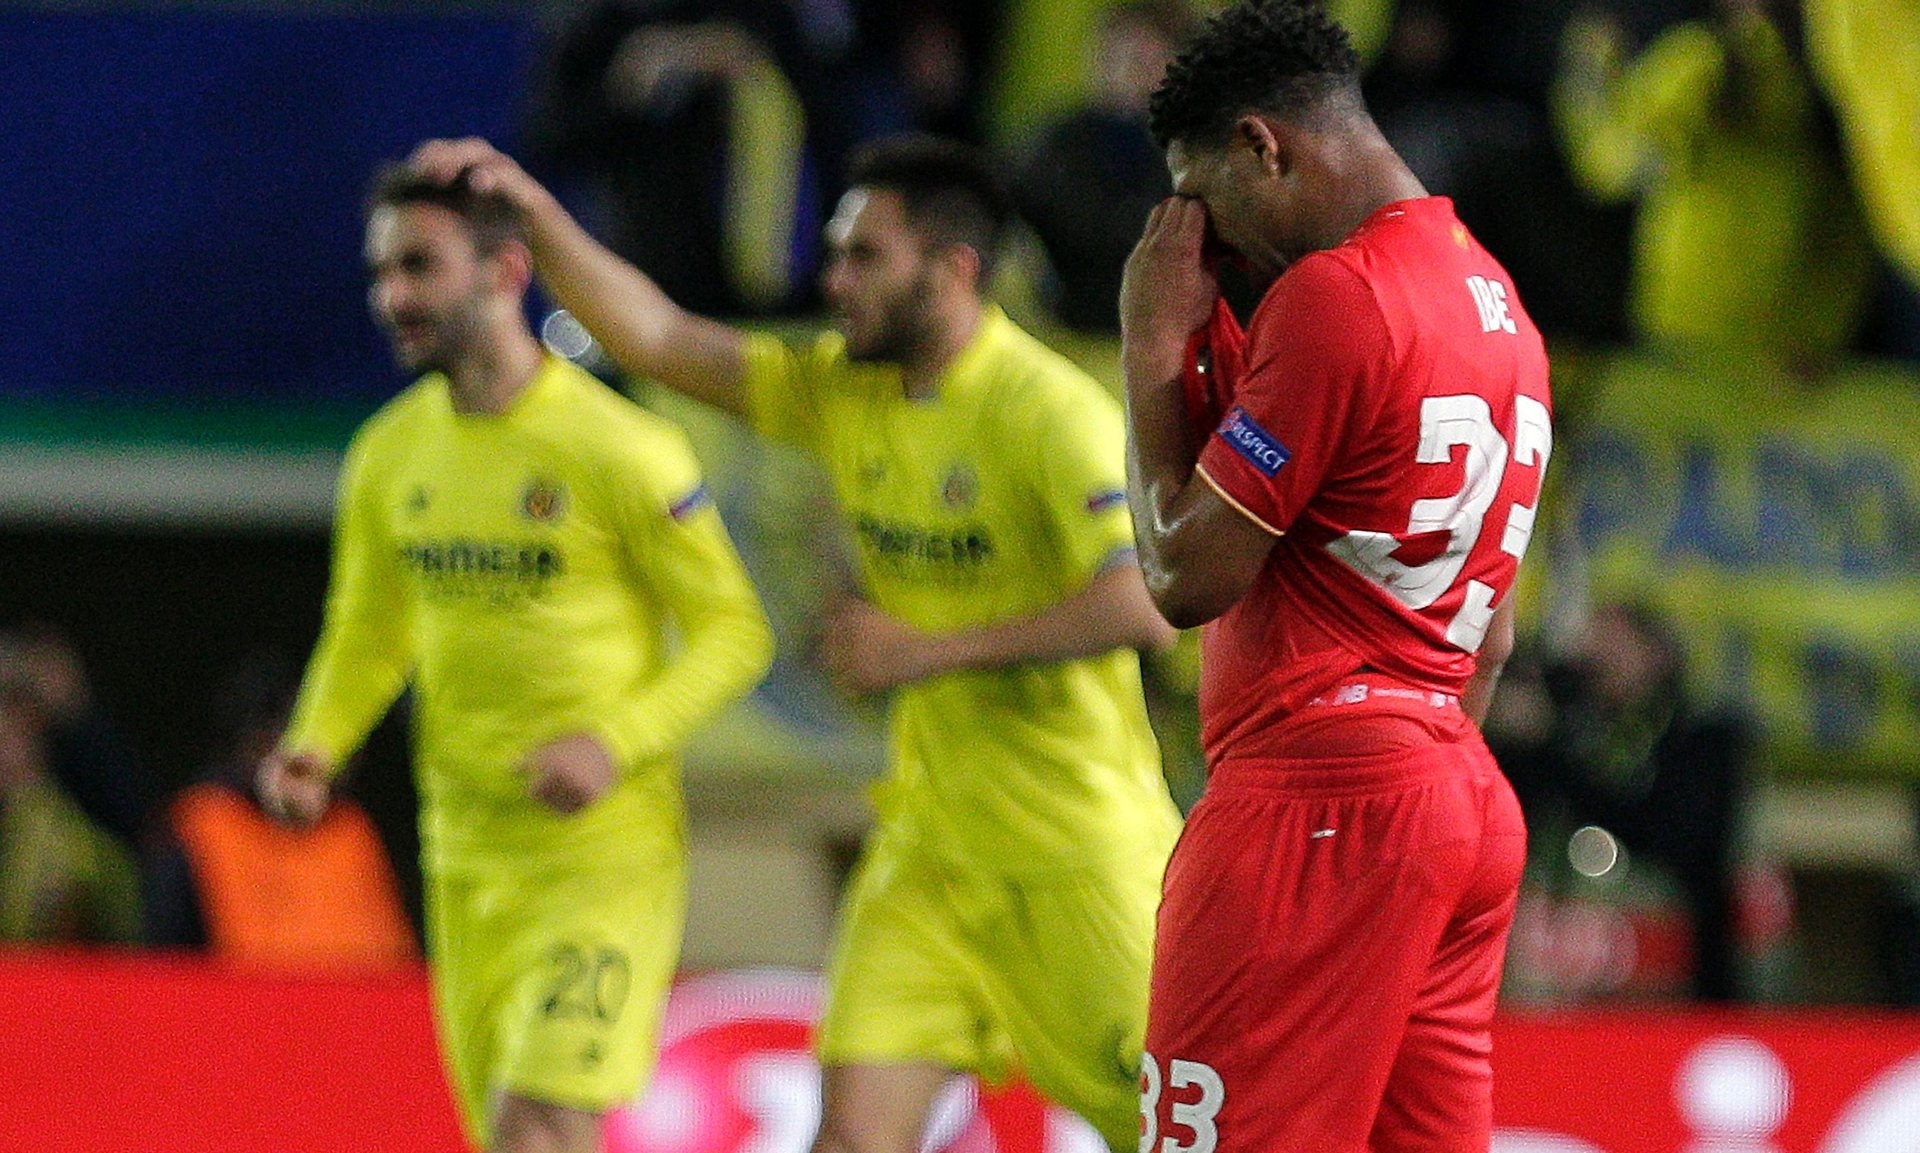 Cetak Gol di Menit Akhir, Villareal Menang 1-0 atas Liverpool